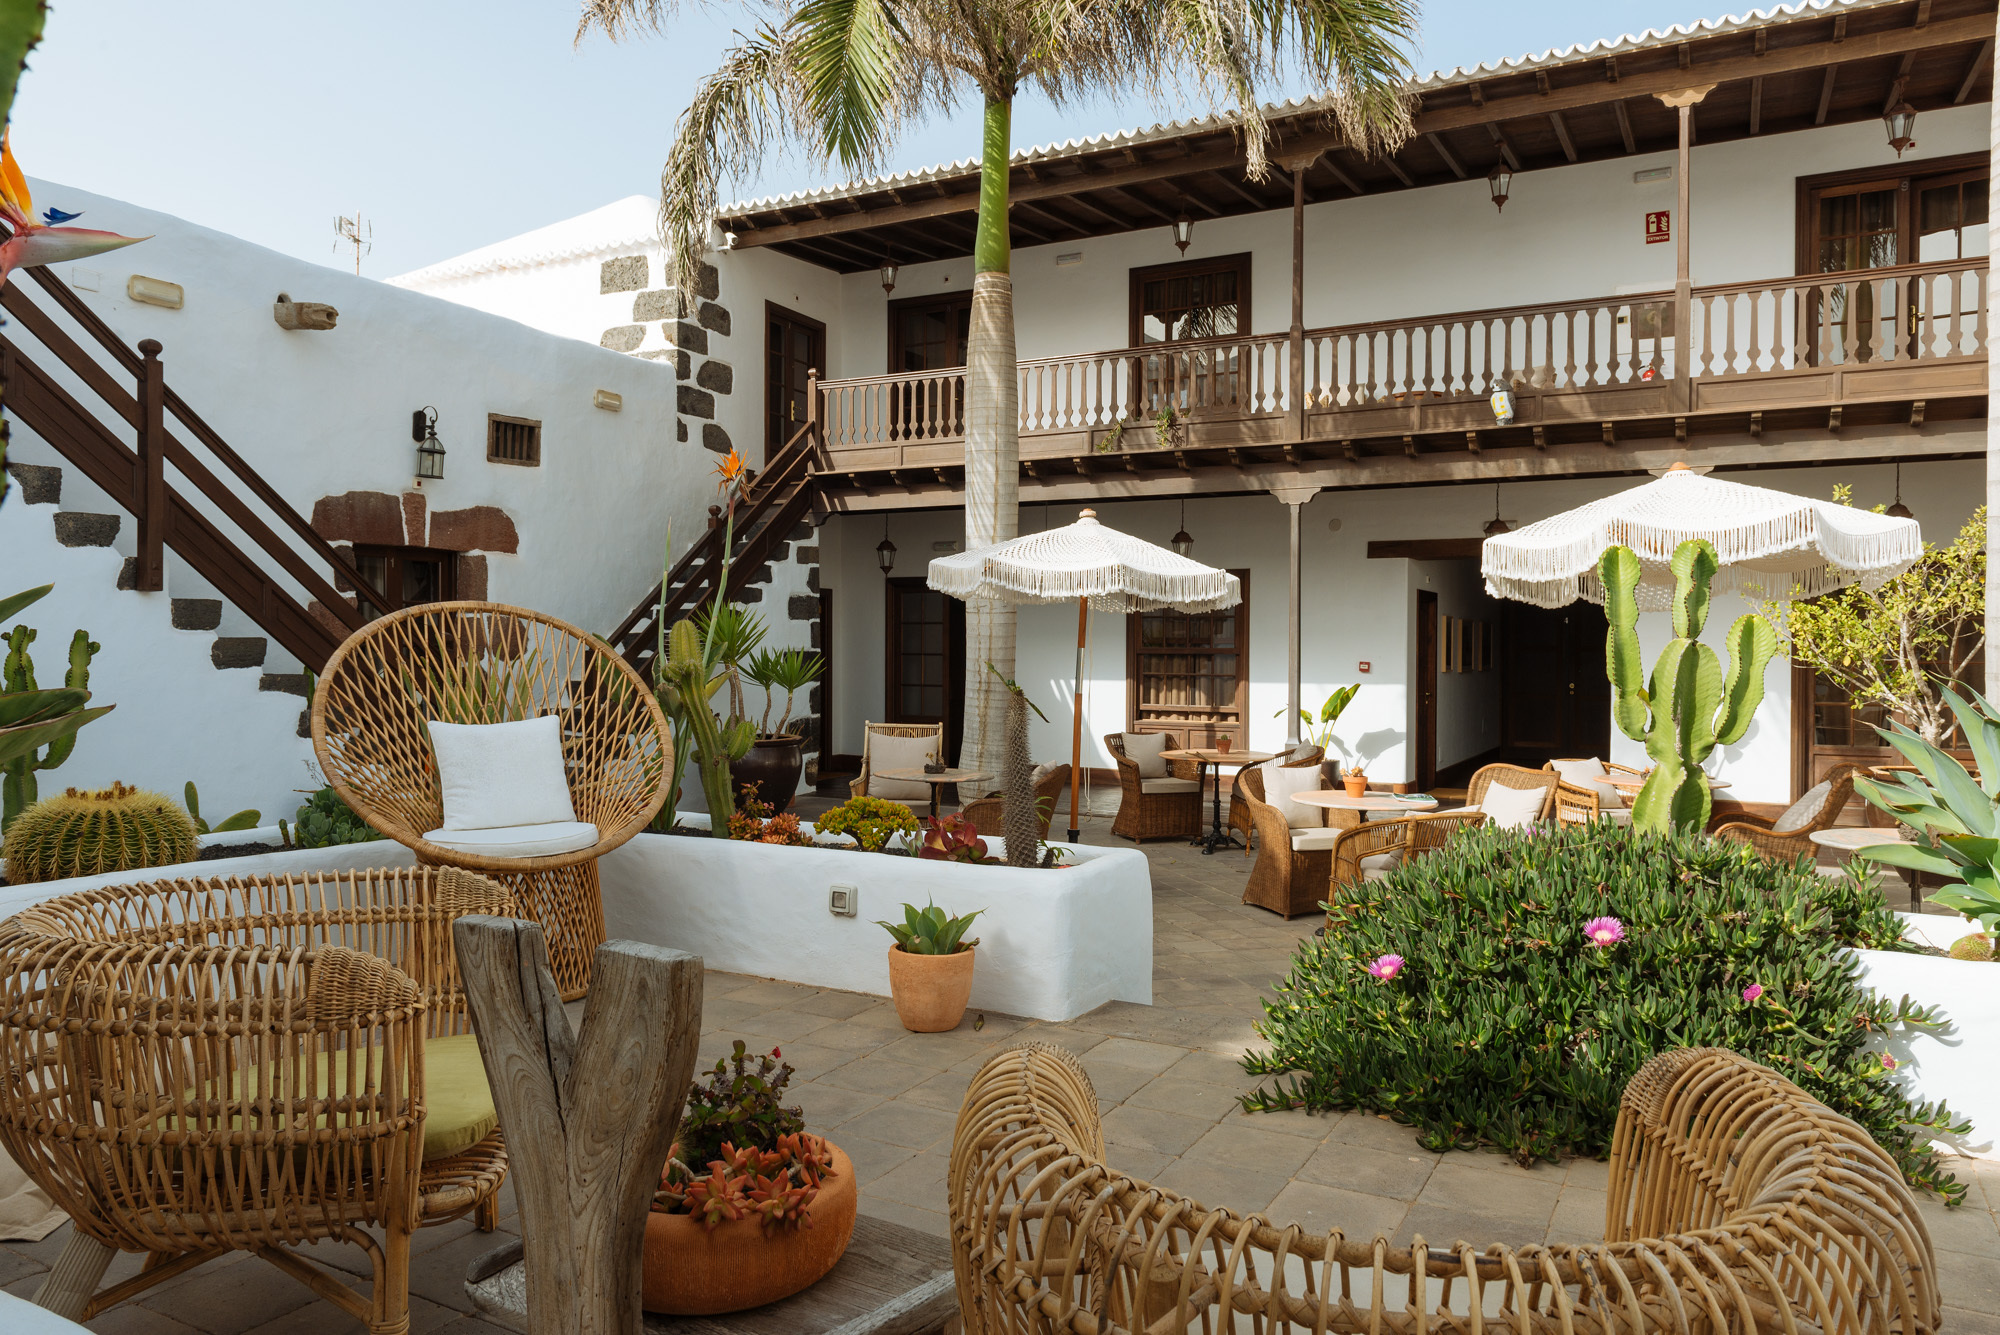 Palacio Ico: Un encuentro gastronómico en Lanzarote recomendado por la Guía Michelin